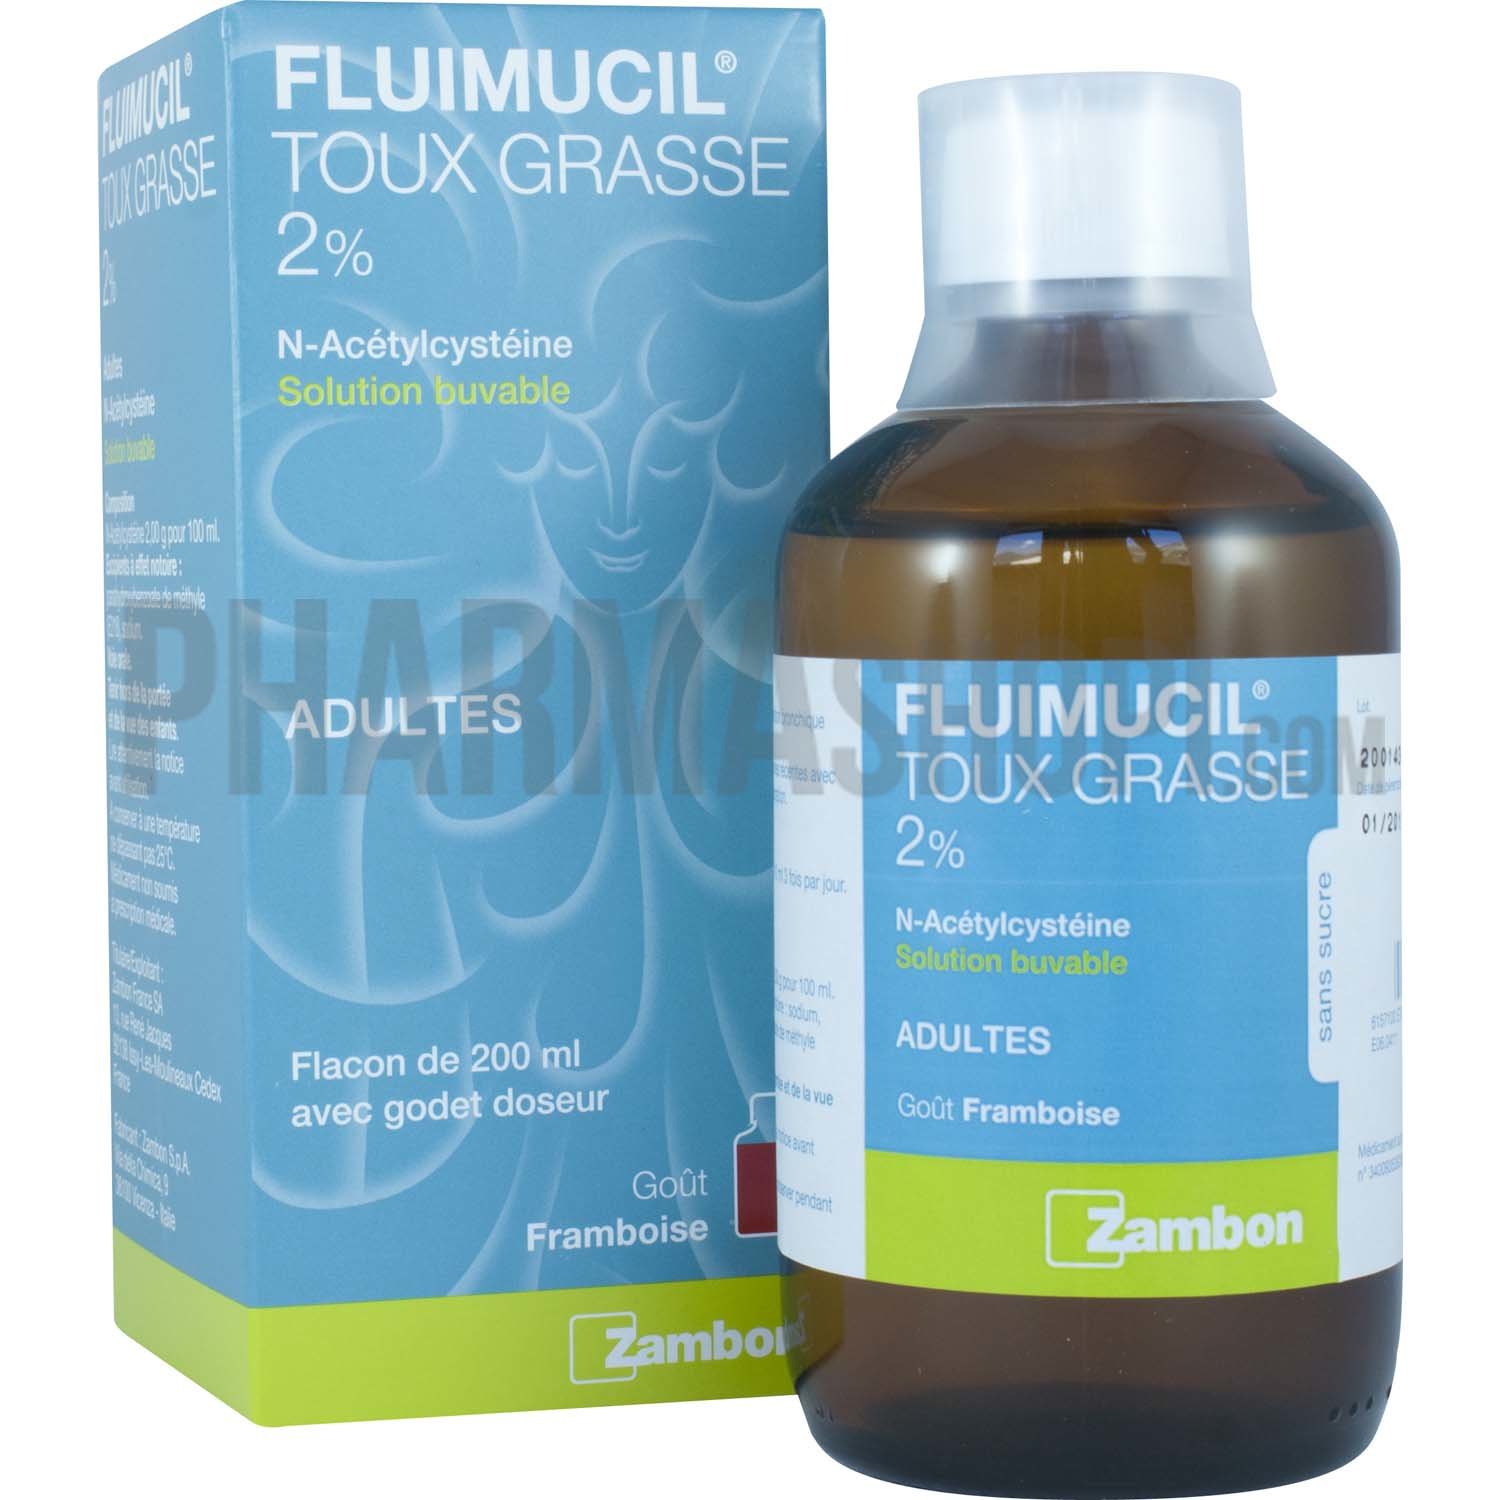 Fluimucil 2% Adultes solution buvable - flacon de 200 ml